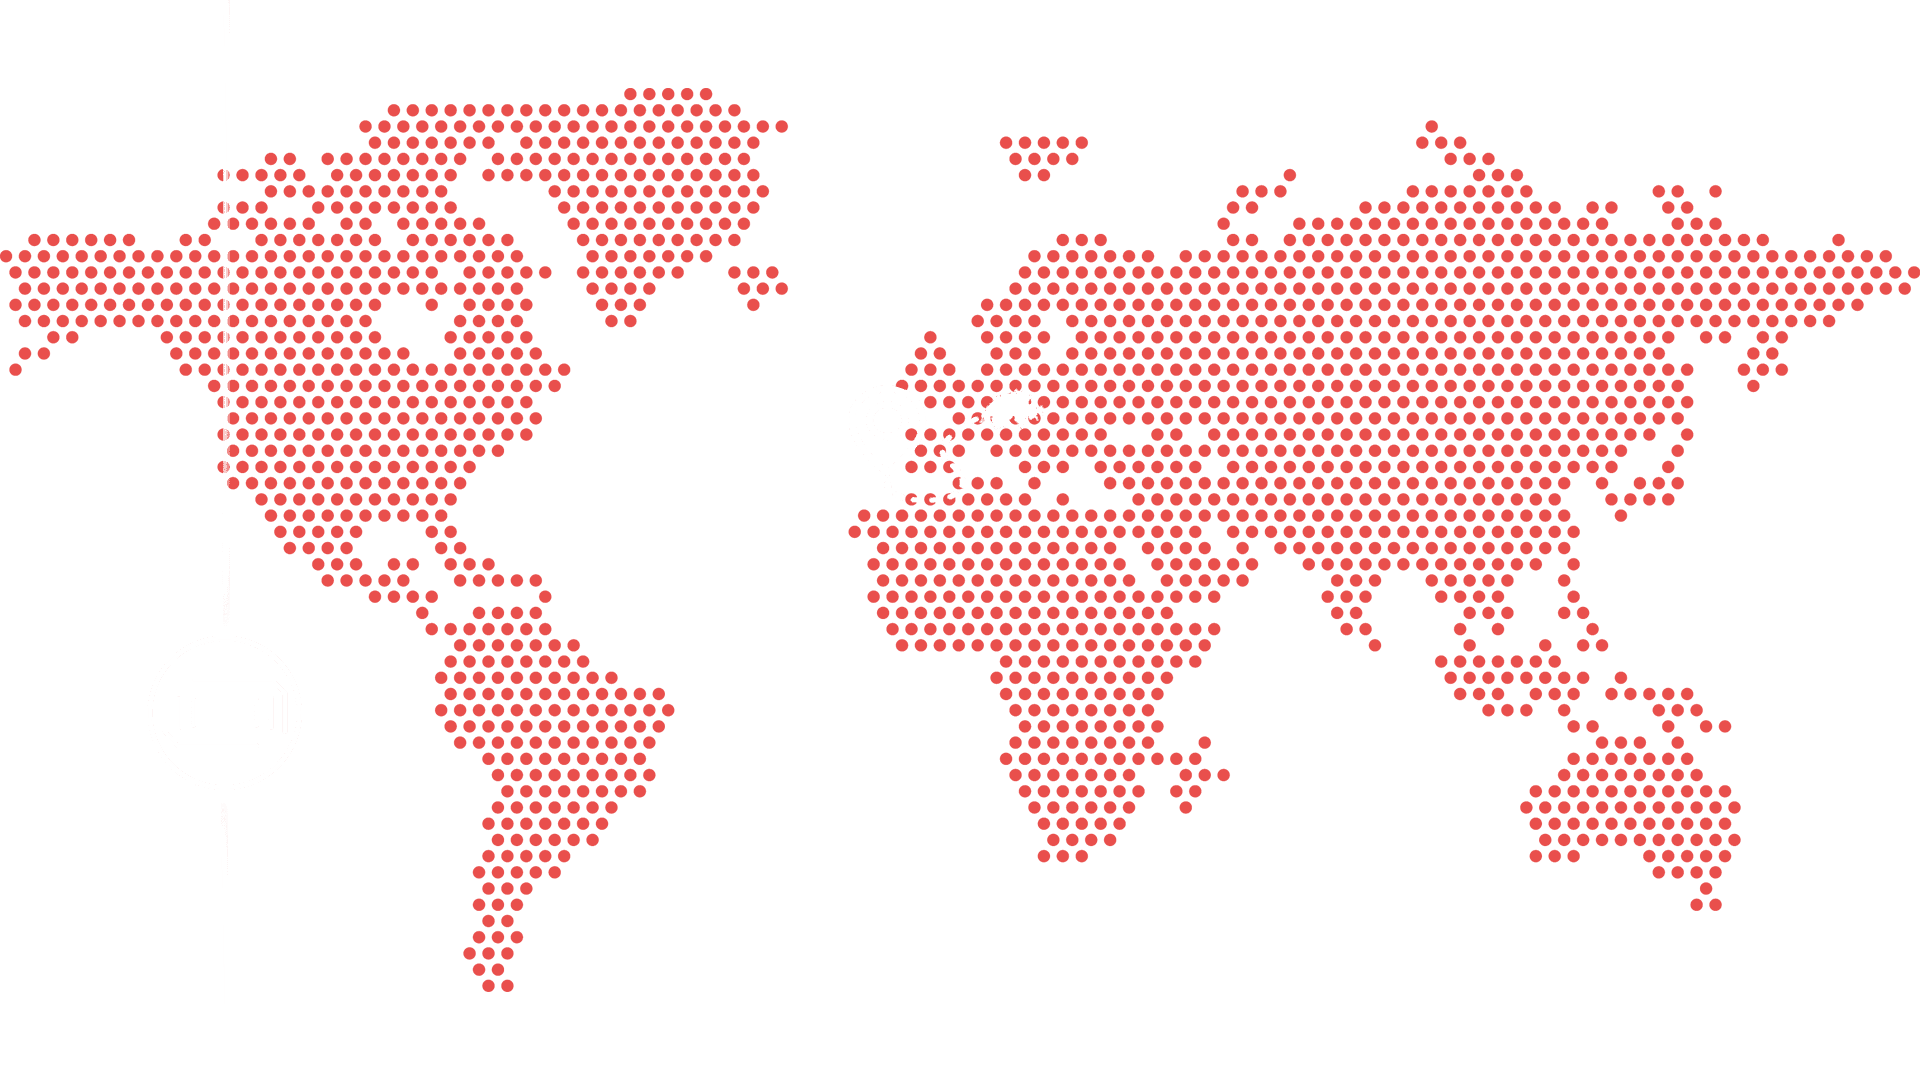 Darstellung einer Weltkarte aus Punkten in rot.